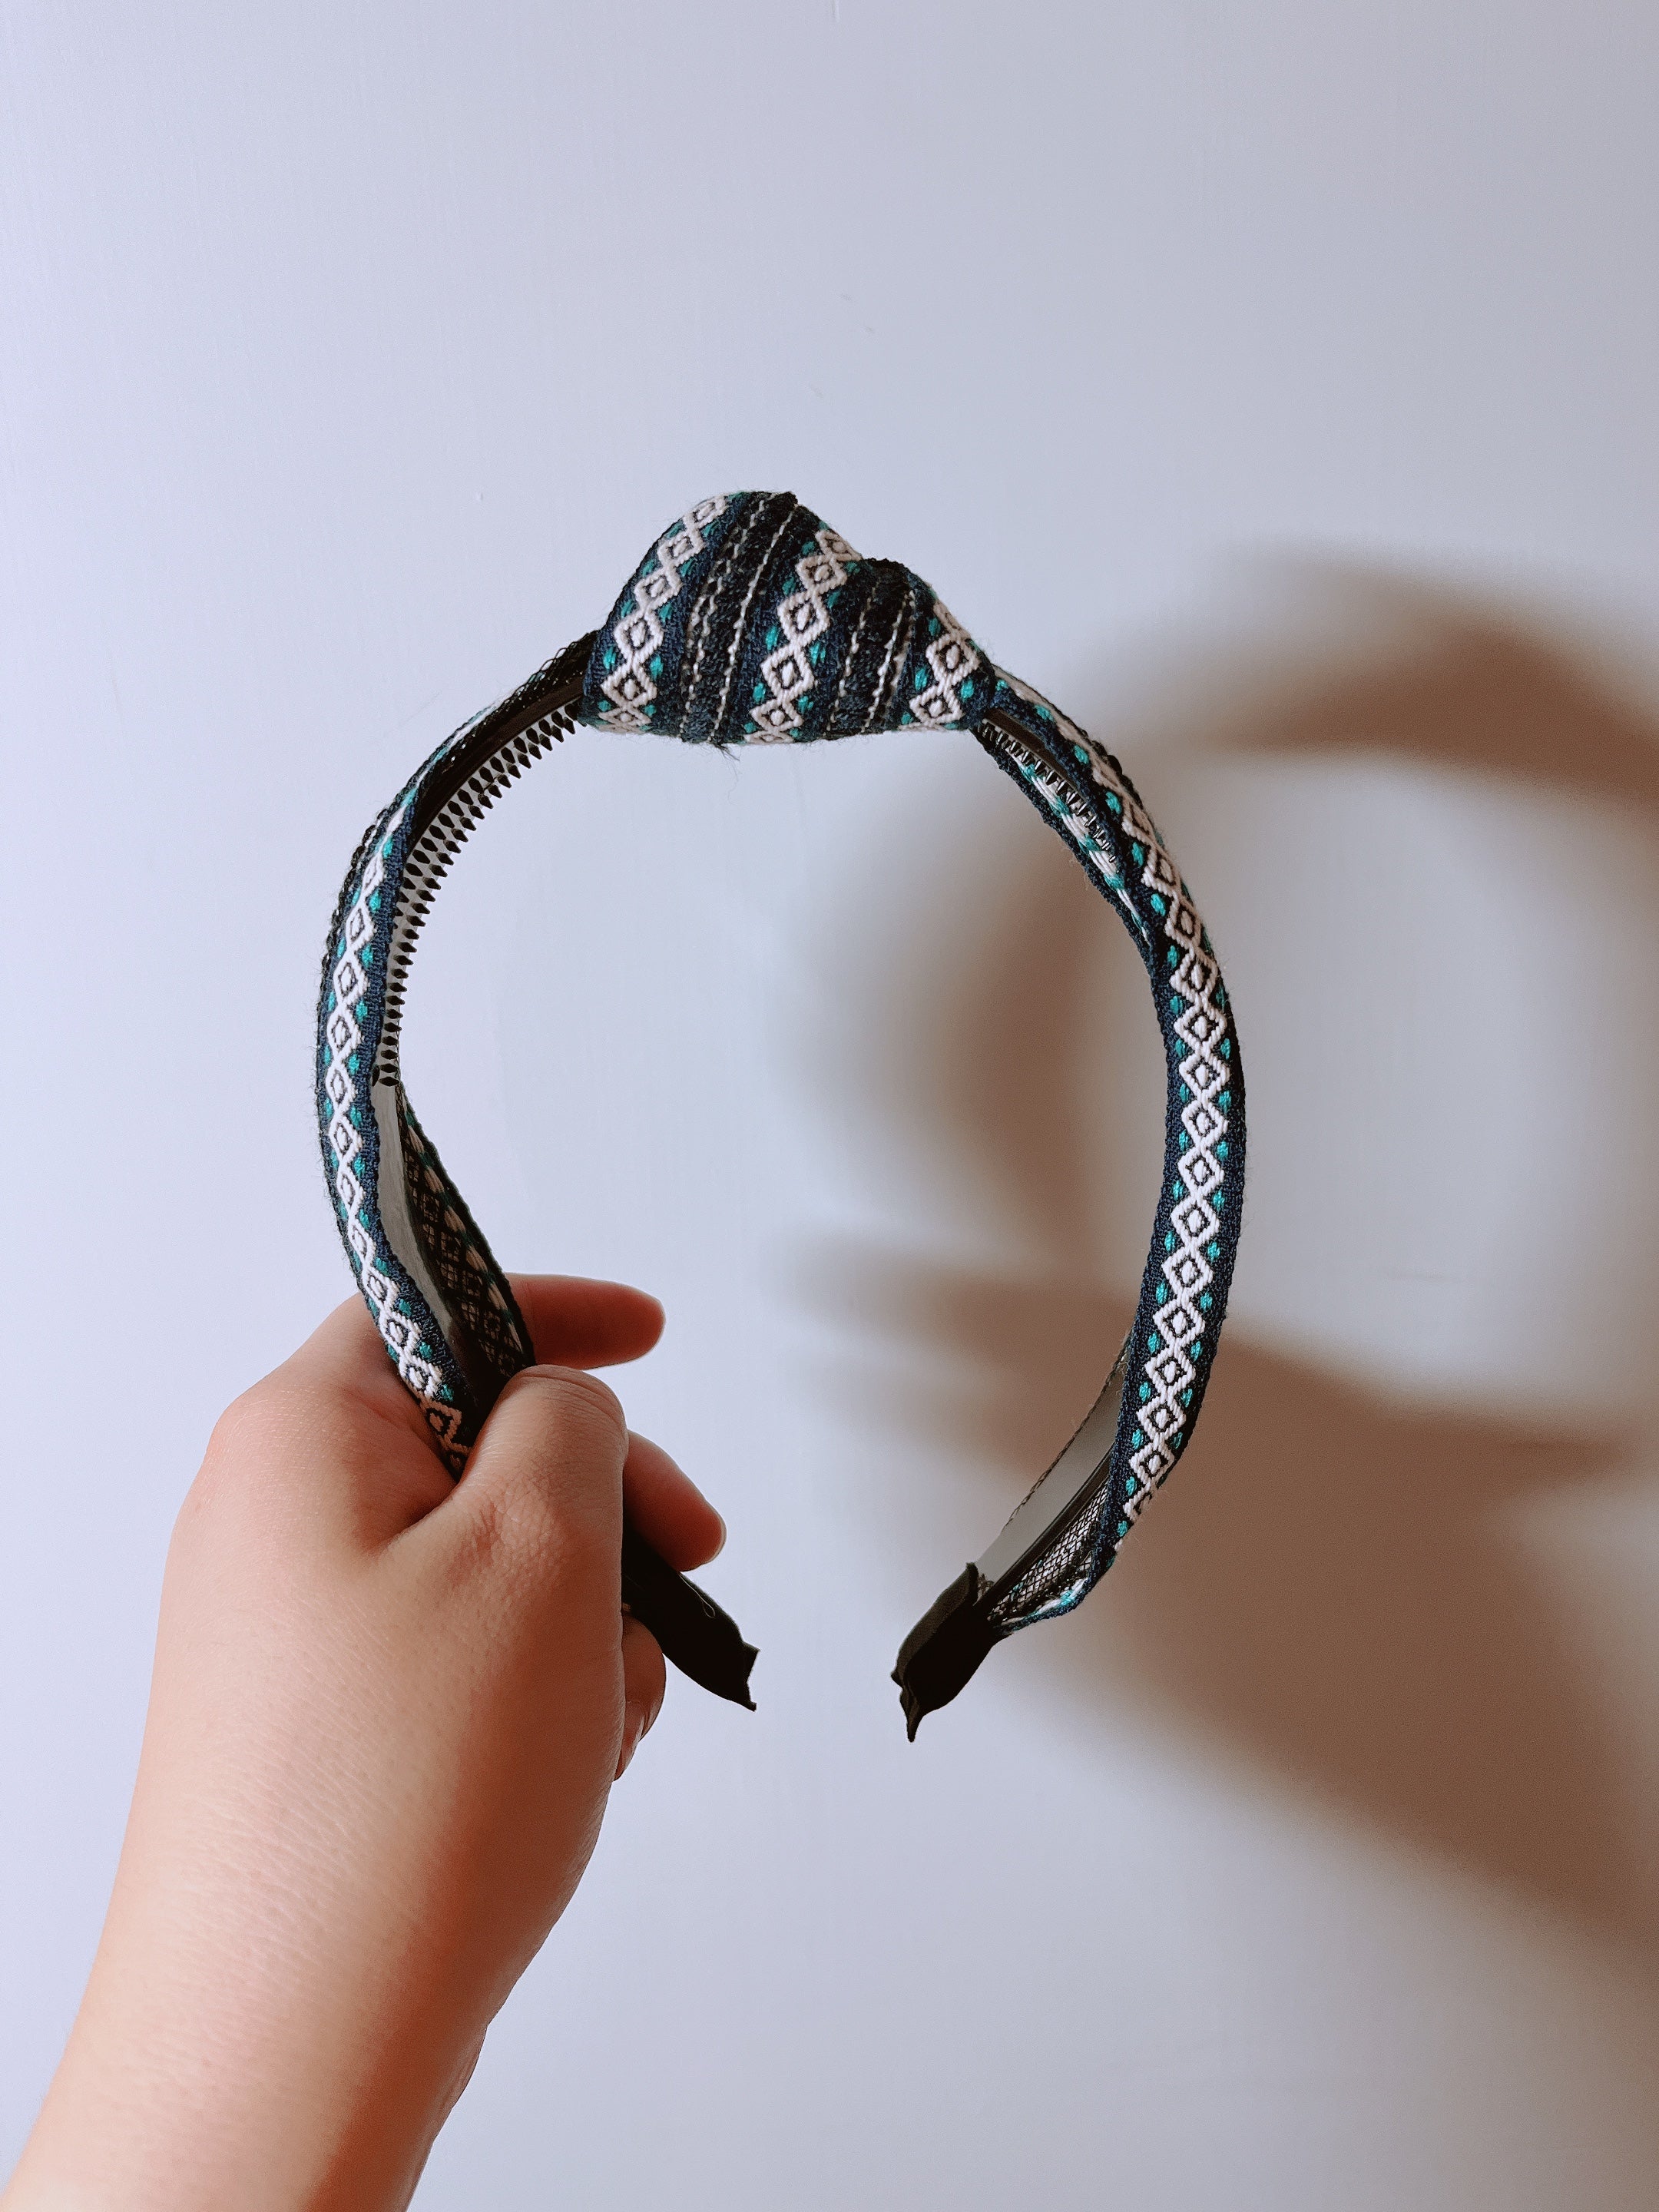 韓式人工髮箍 - 藍黑色民族髮箍